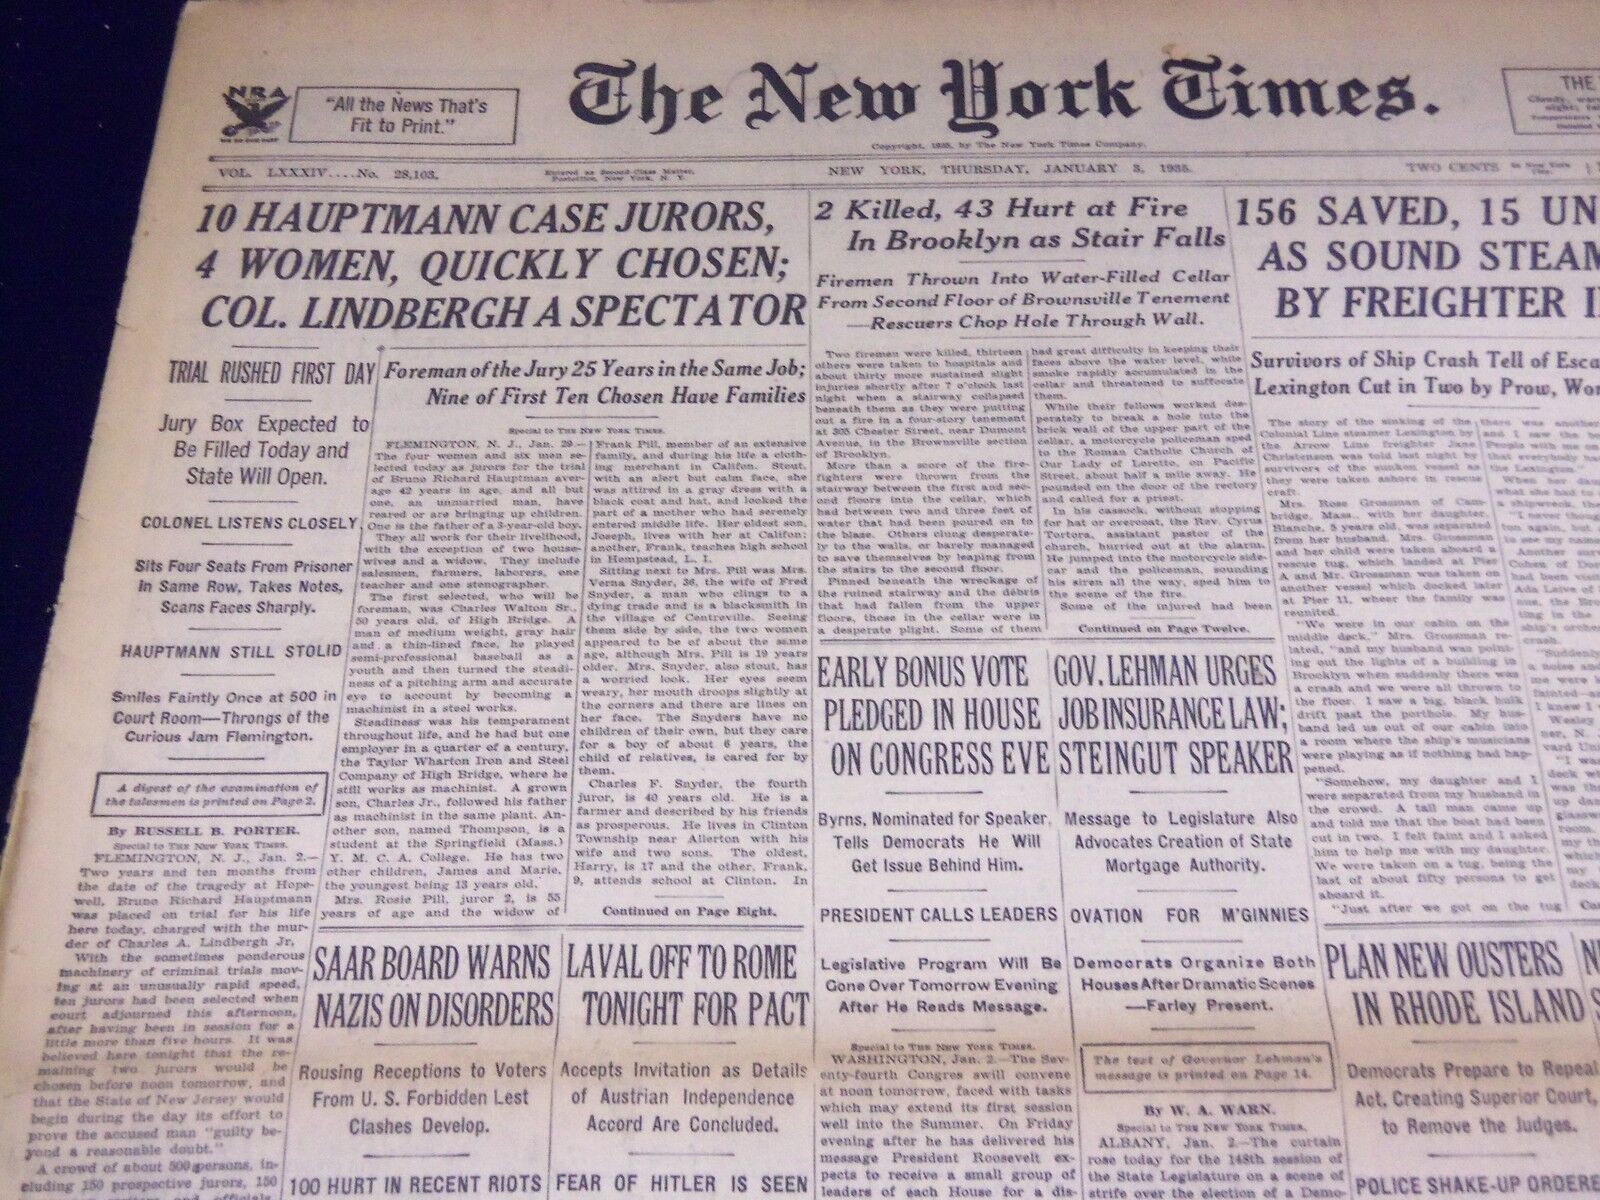 1935 JAN 3 NEW YORK TIMES 10 HAUPTMANN JURORS, 4 WOMEN, QUICKLY CHOSEN - NT 1942